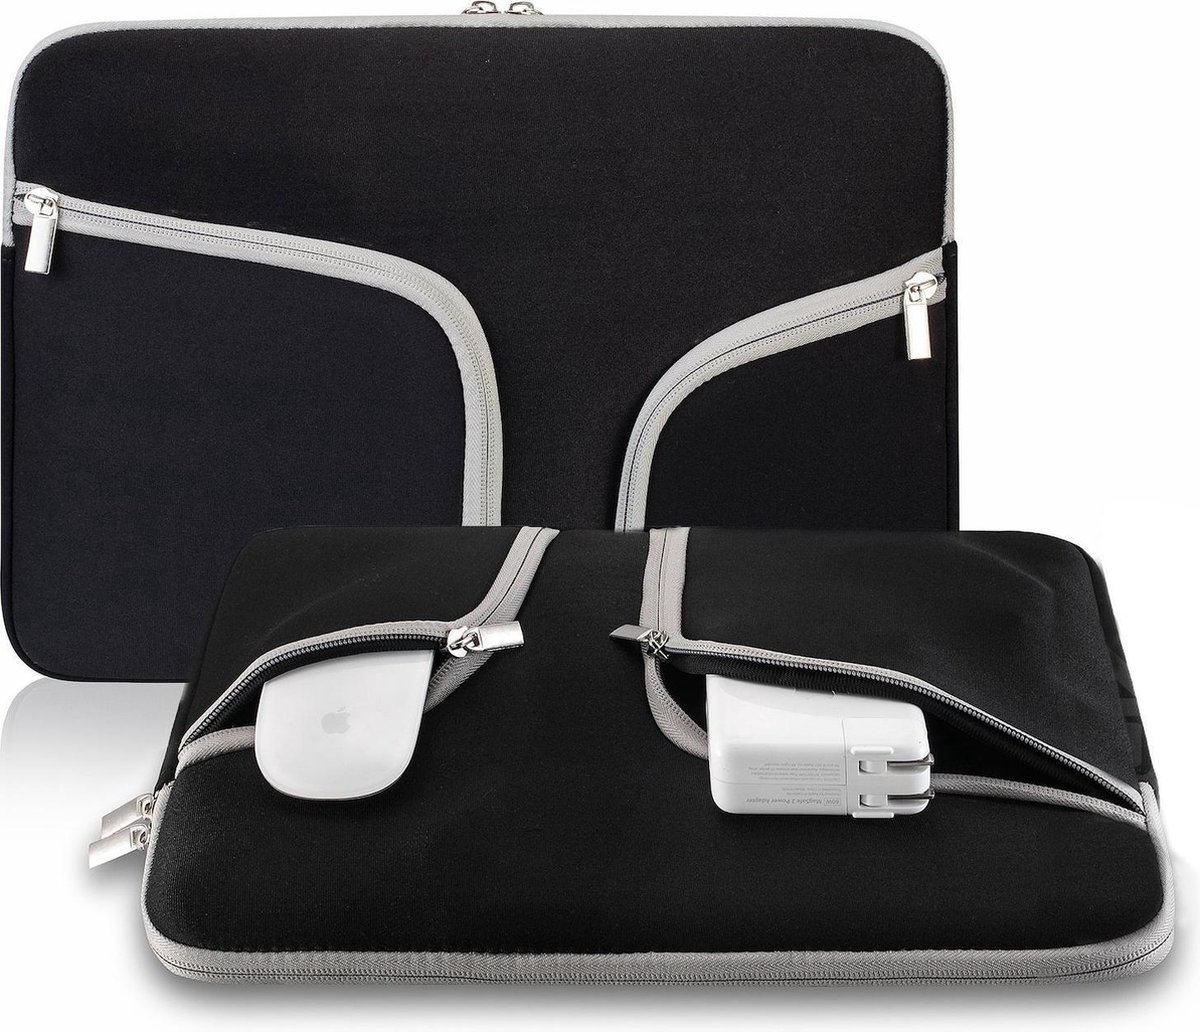 Laptop Sleeve met rits voor o.a. voor MacBook Pro 13 / MacBook Retina 13 inch - Laptoptas - Zwart